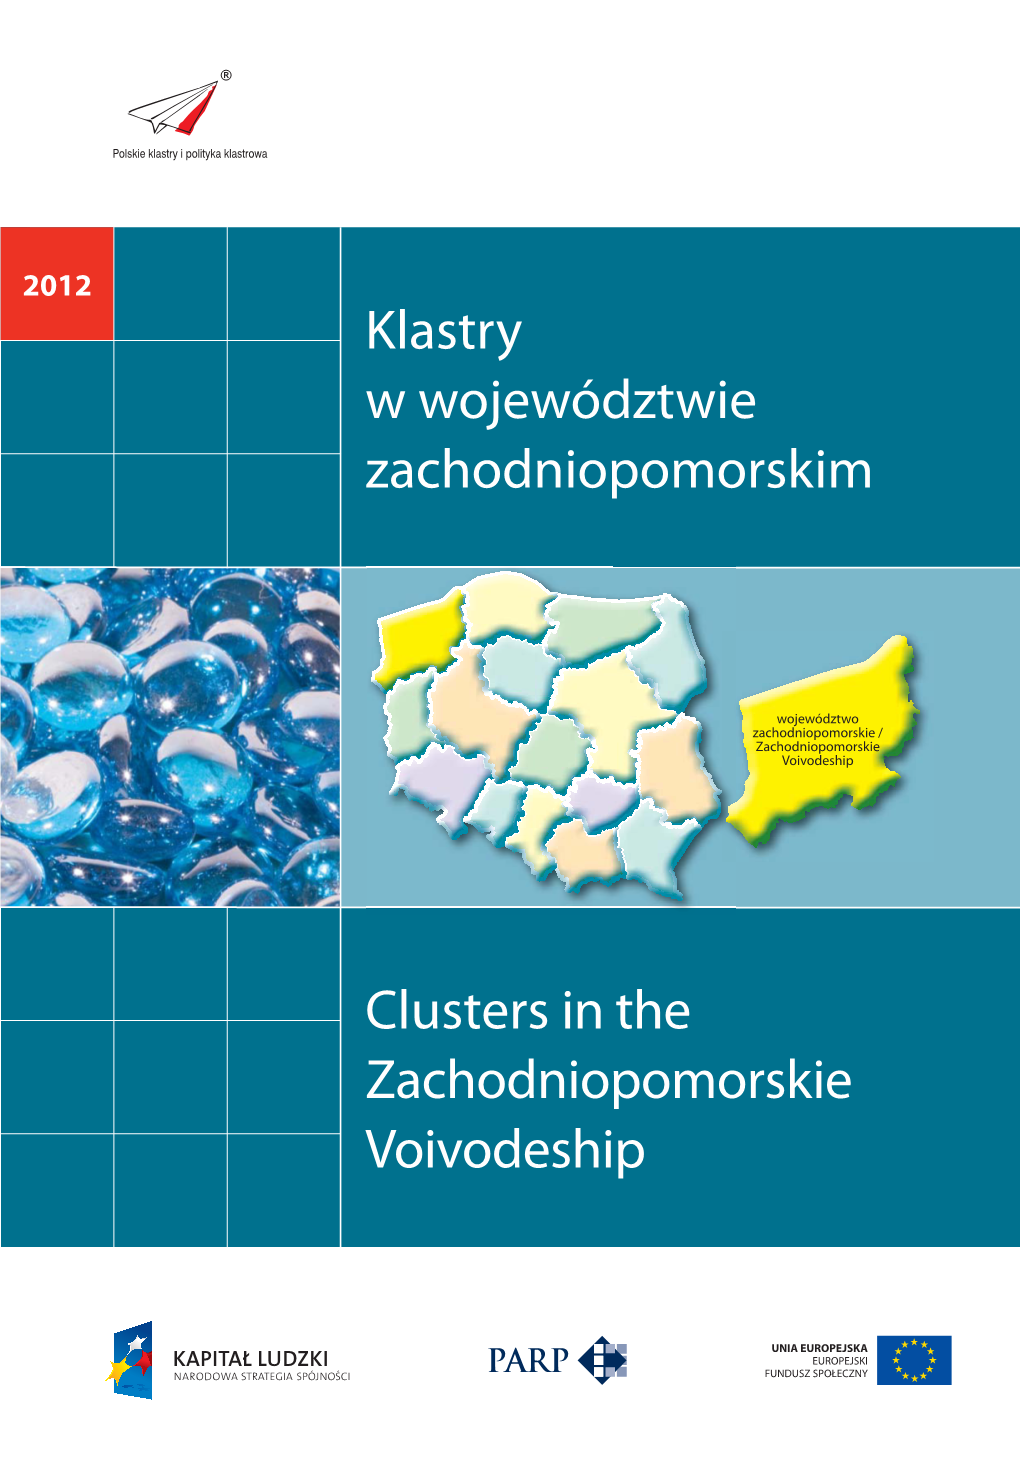 Klastry W Województwie Zachodniopomorskim Clusters in the Zachodniopomorskie Voivodeship